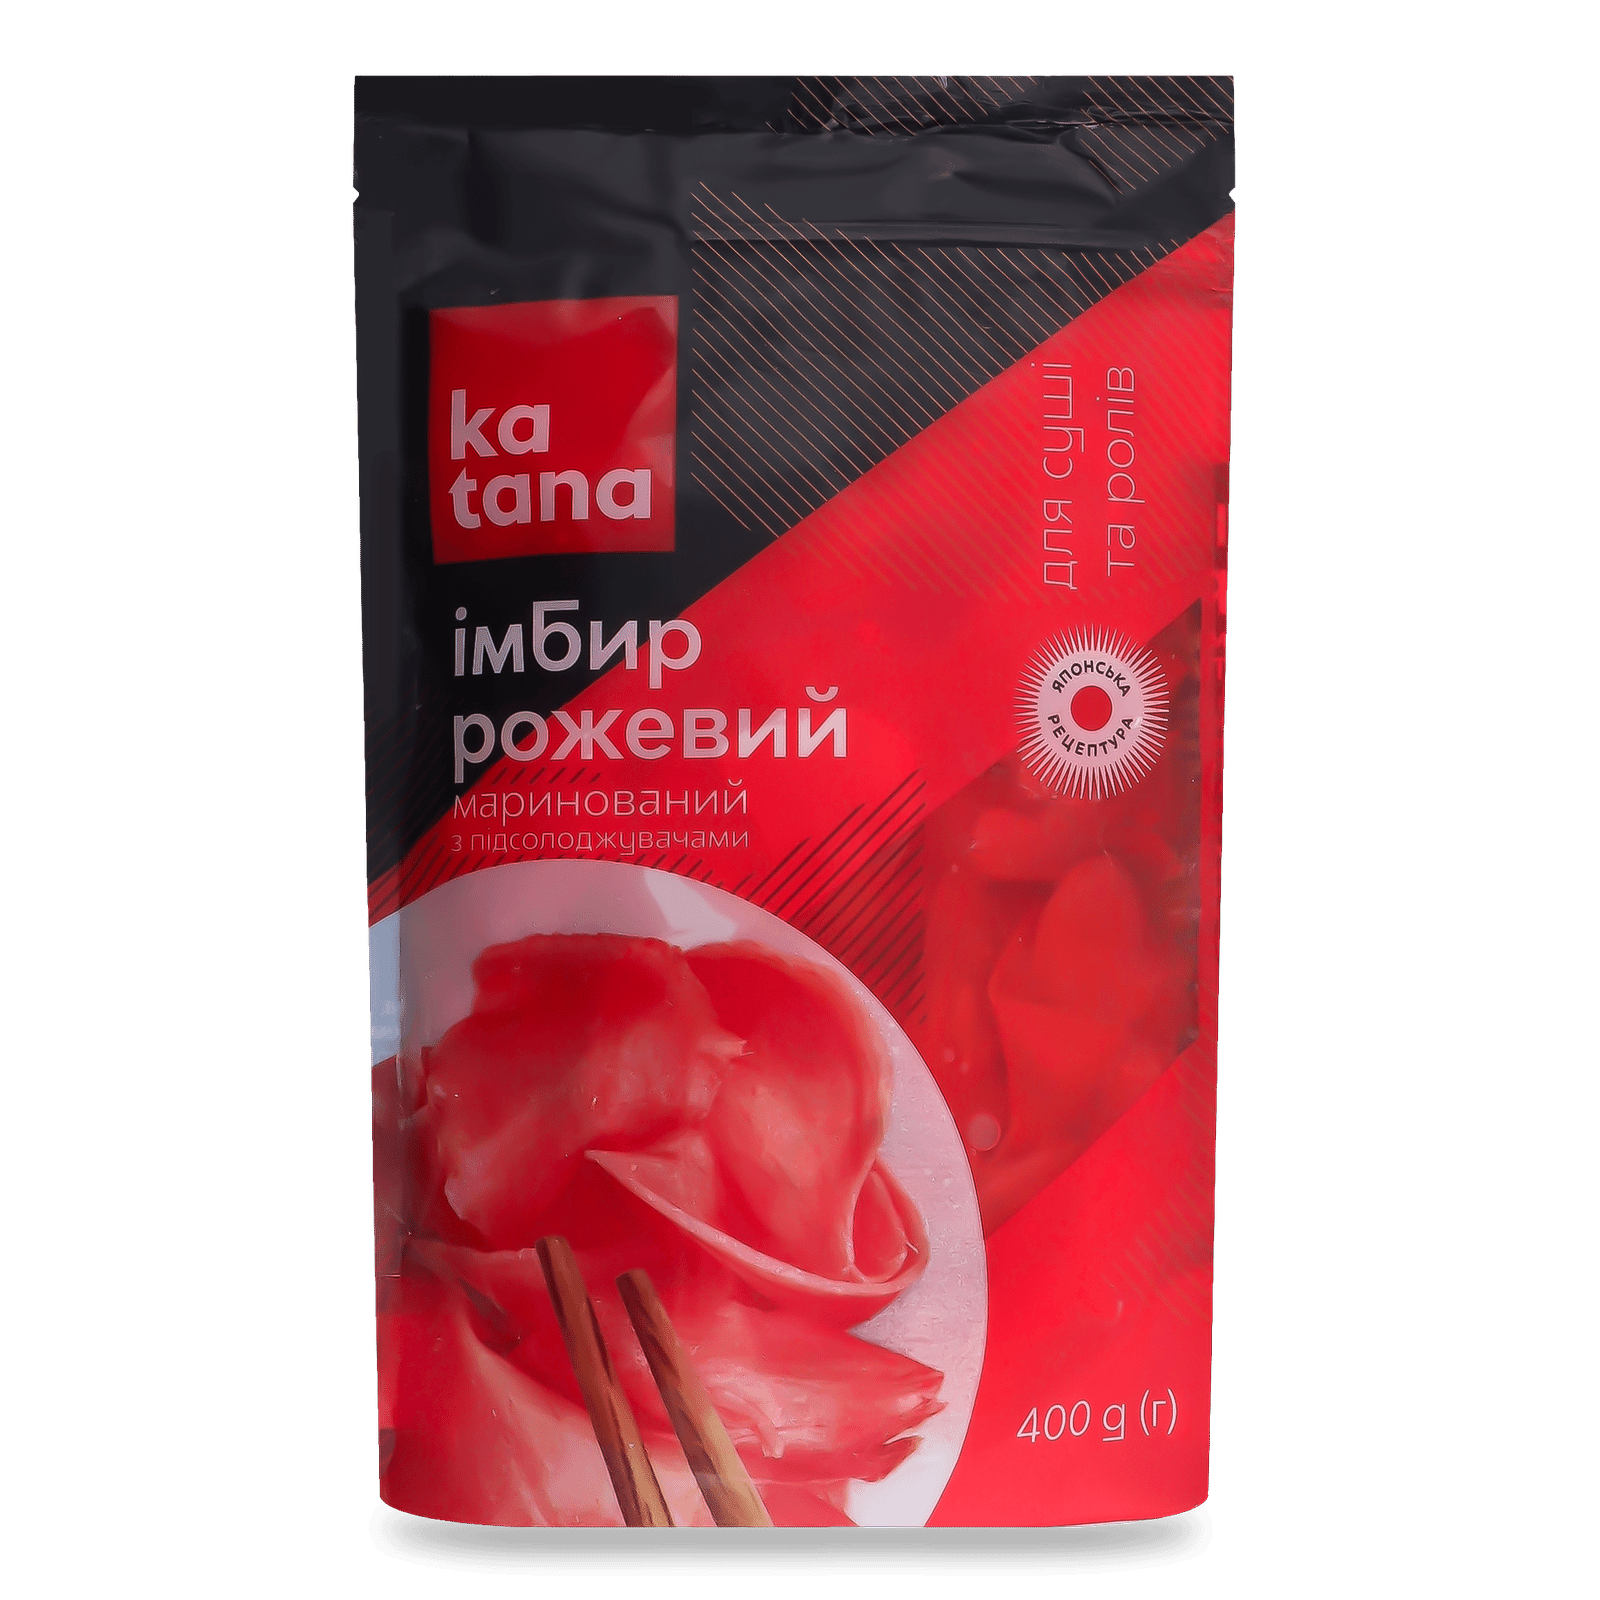 Імбир Katana рожевий маринований - 1